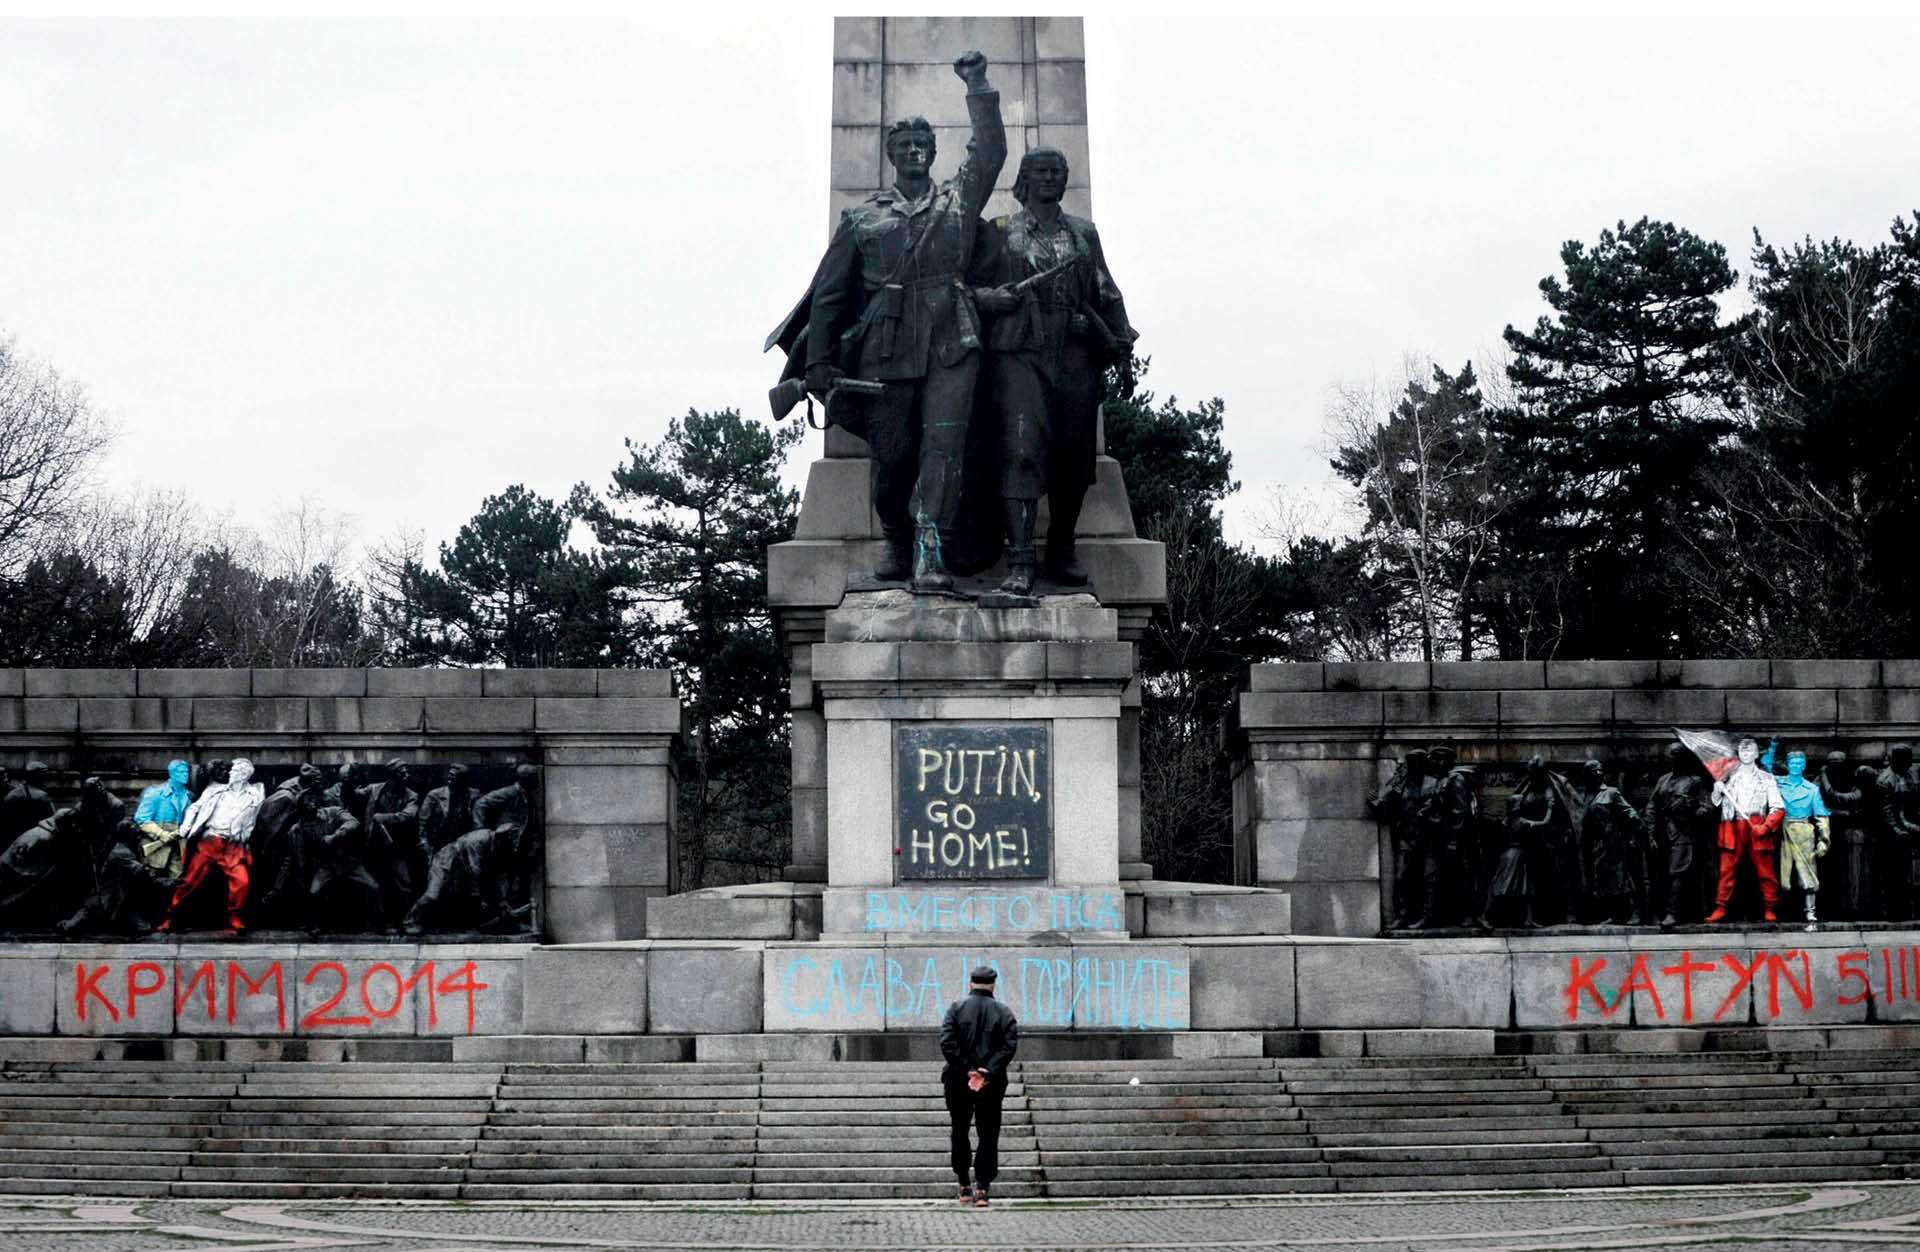 Pomnik z czasów komunistycznych w stolicy Bułgarii. Część postaci pomalowano w polskie i ukraińskie barwy; pojawiły się na nim także napisy: „Krym 2014”, „Putin do domu” i „Katyń 1940”